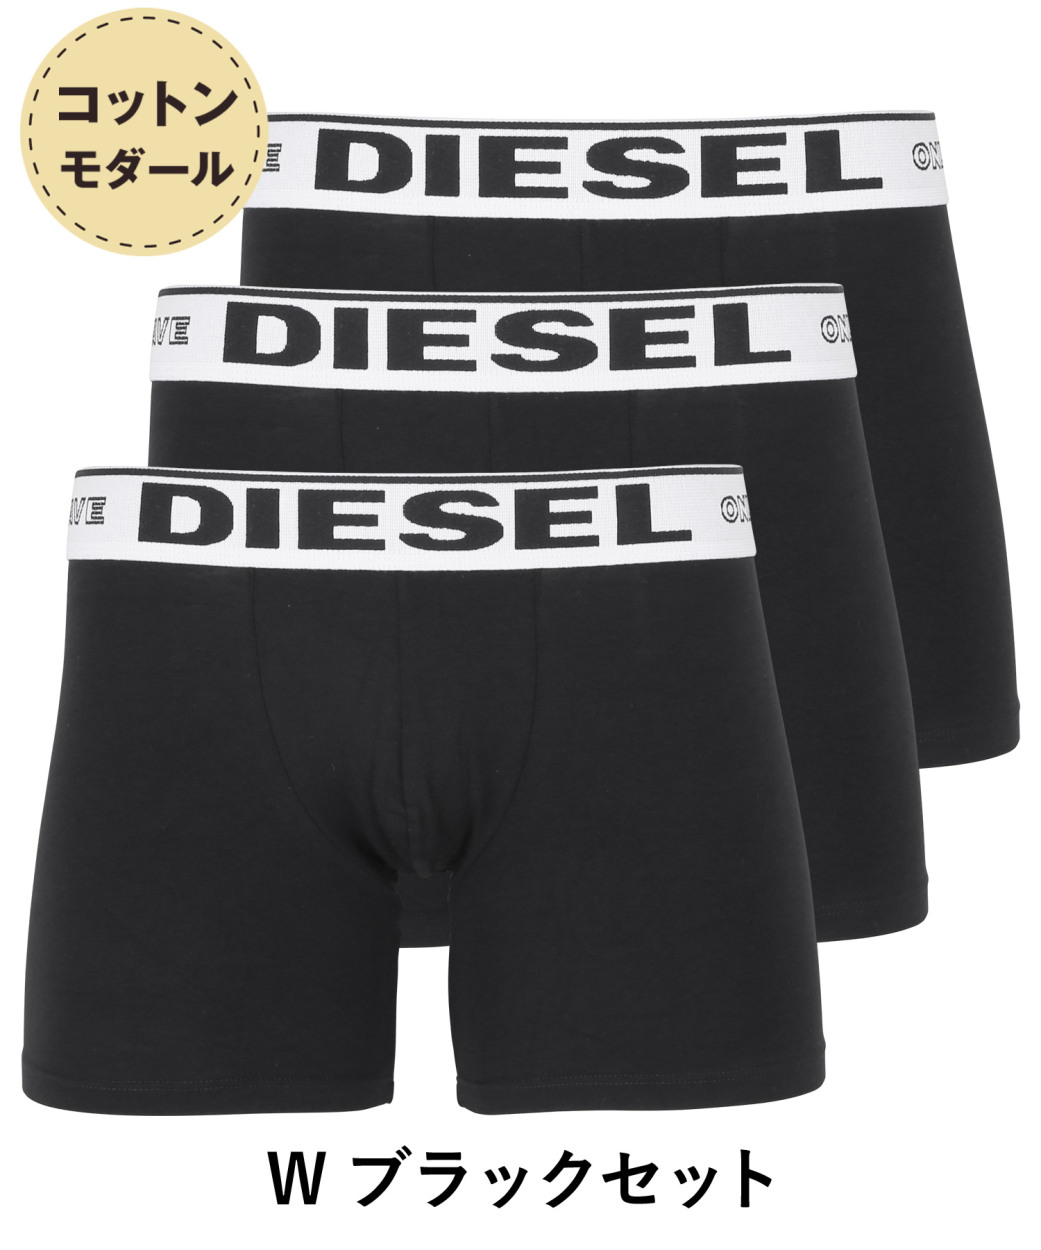 ディーゼル DIESEL ロングボクサーパンツ 3枚セット メンズ アンダーウェア 男性 下着 綿混 コットン ブランド ロゴ プレゼント ギフト